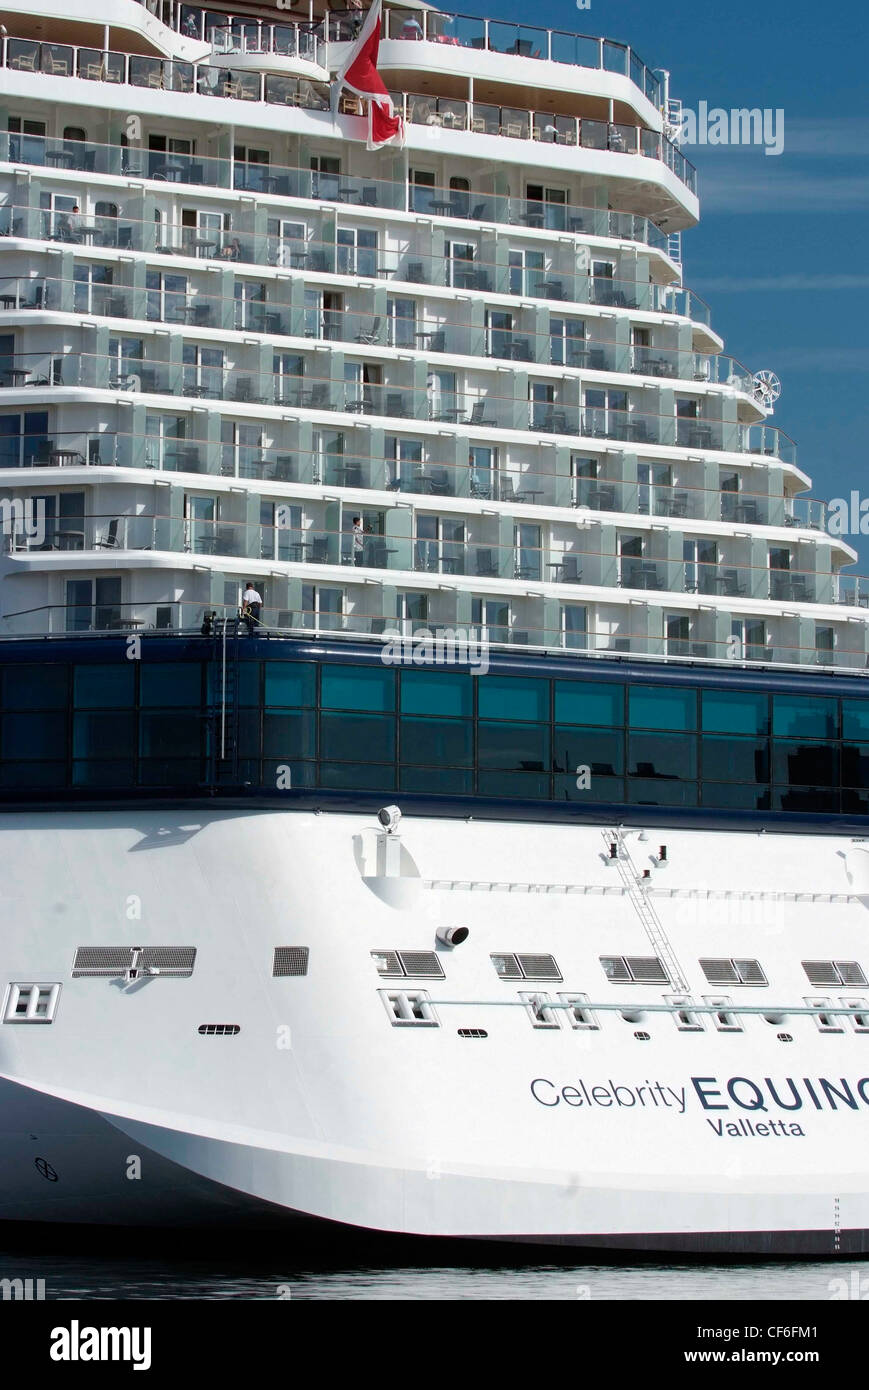 Norwegen Oslo Hafen Celebrity Cruises Kreuzfahrtschiff, die Equinox während Fjord Kreuzfahrt vor Anker Stockfoto